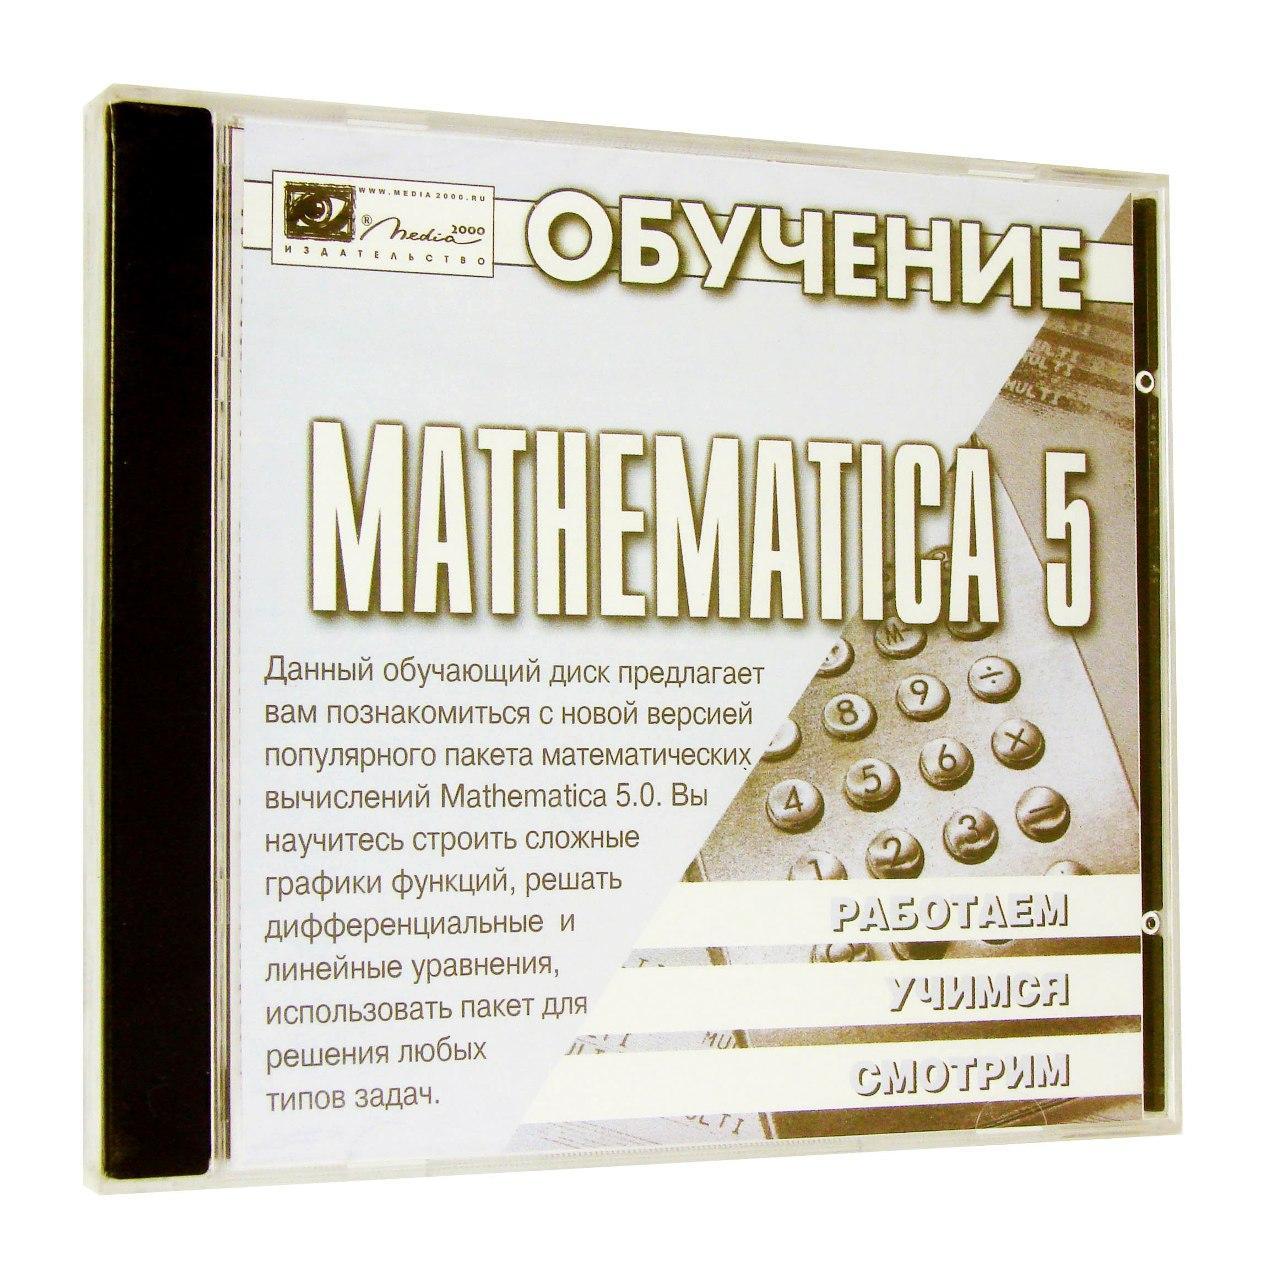 Компьютерный компакт-диск Обучение Mathematica 5.0 (PC), фирма "Медиа 2000", 1CD